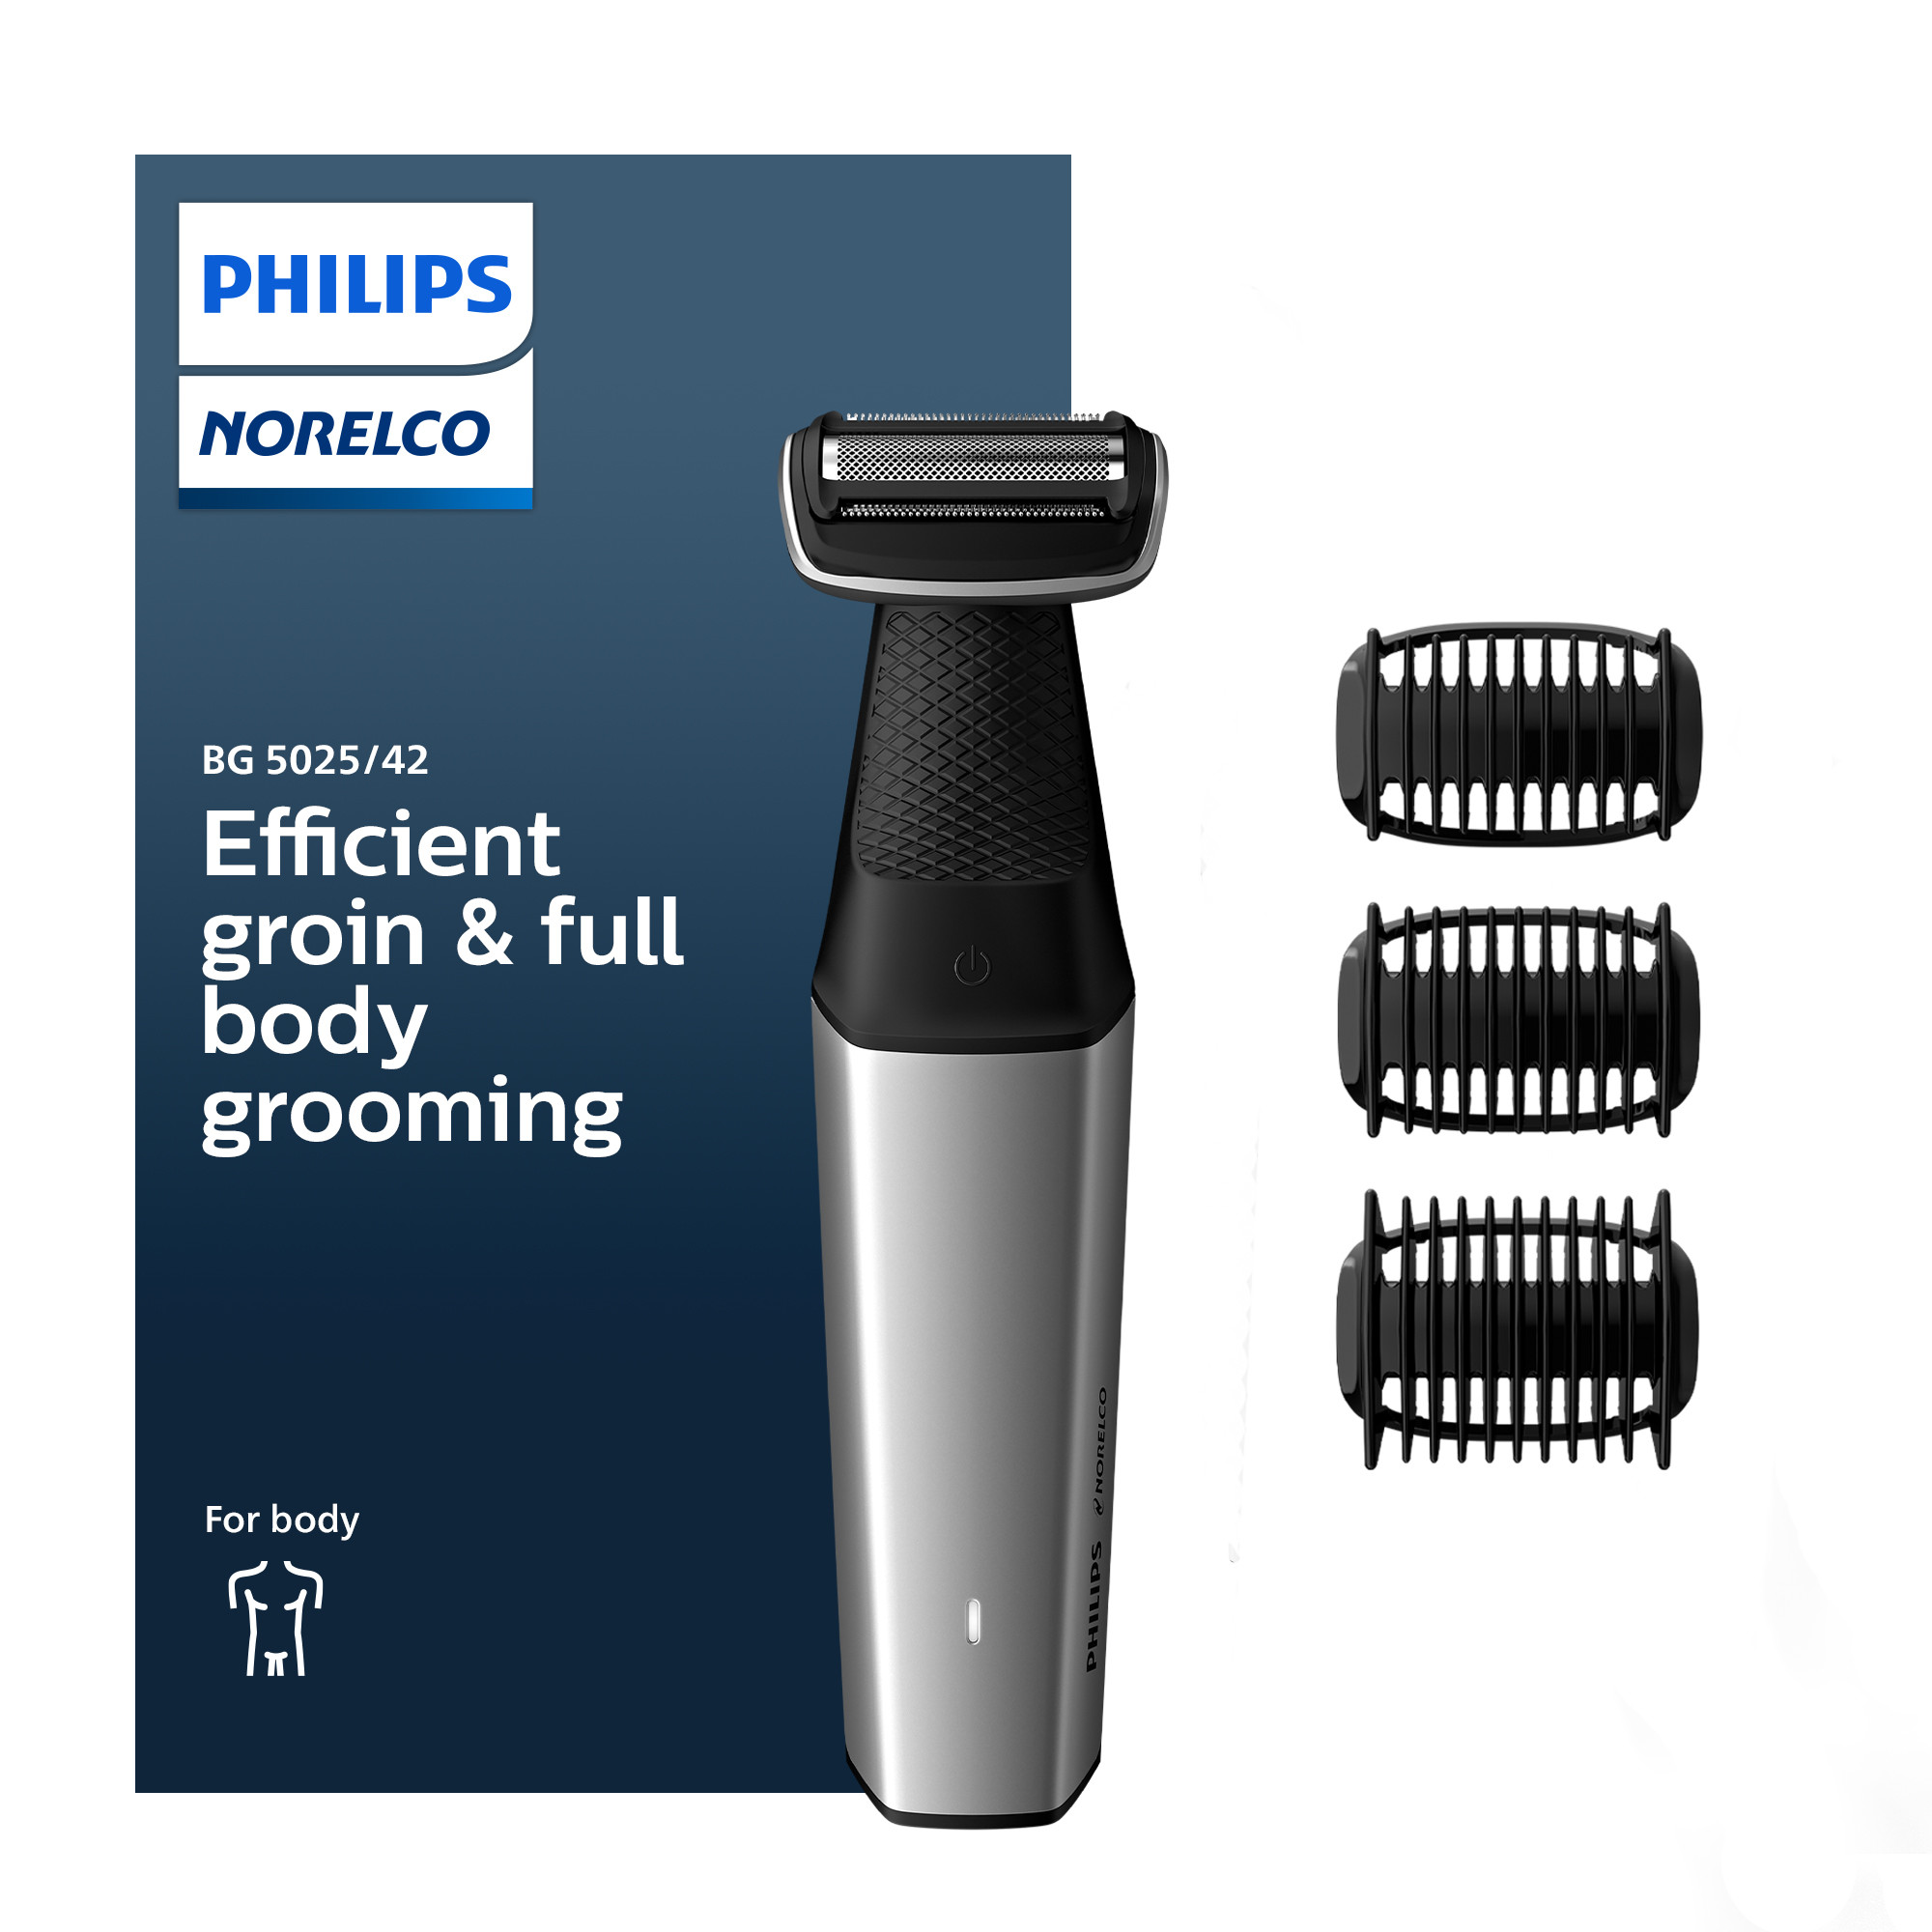 Philips Norelco Bodygroom Series 5000 Showerproof Body & Groin Trimmer & Shaver, Manscaping, BG5025/42 - image 1 of 13